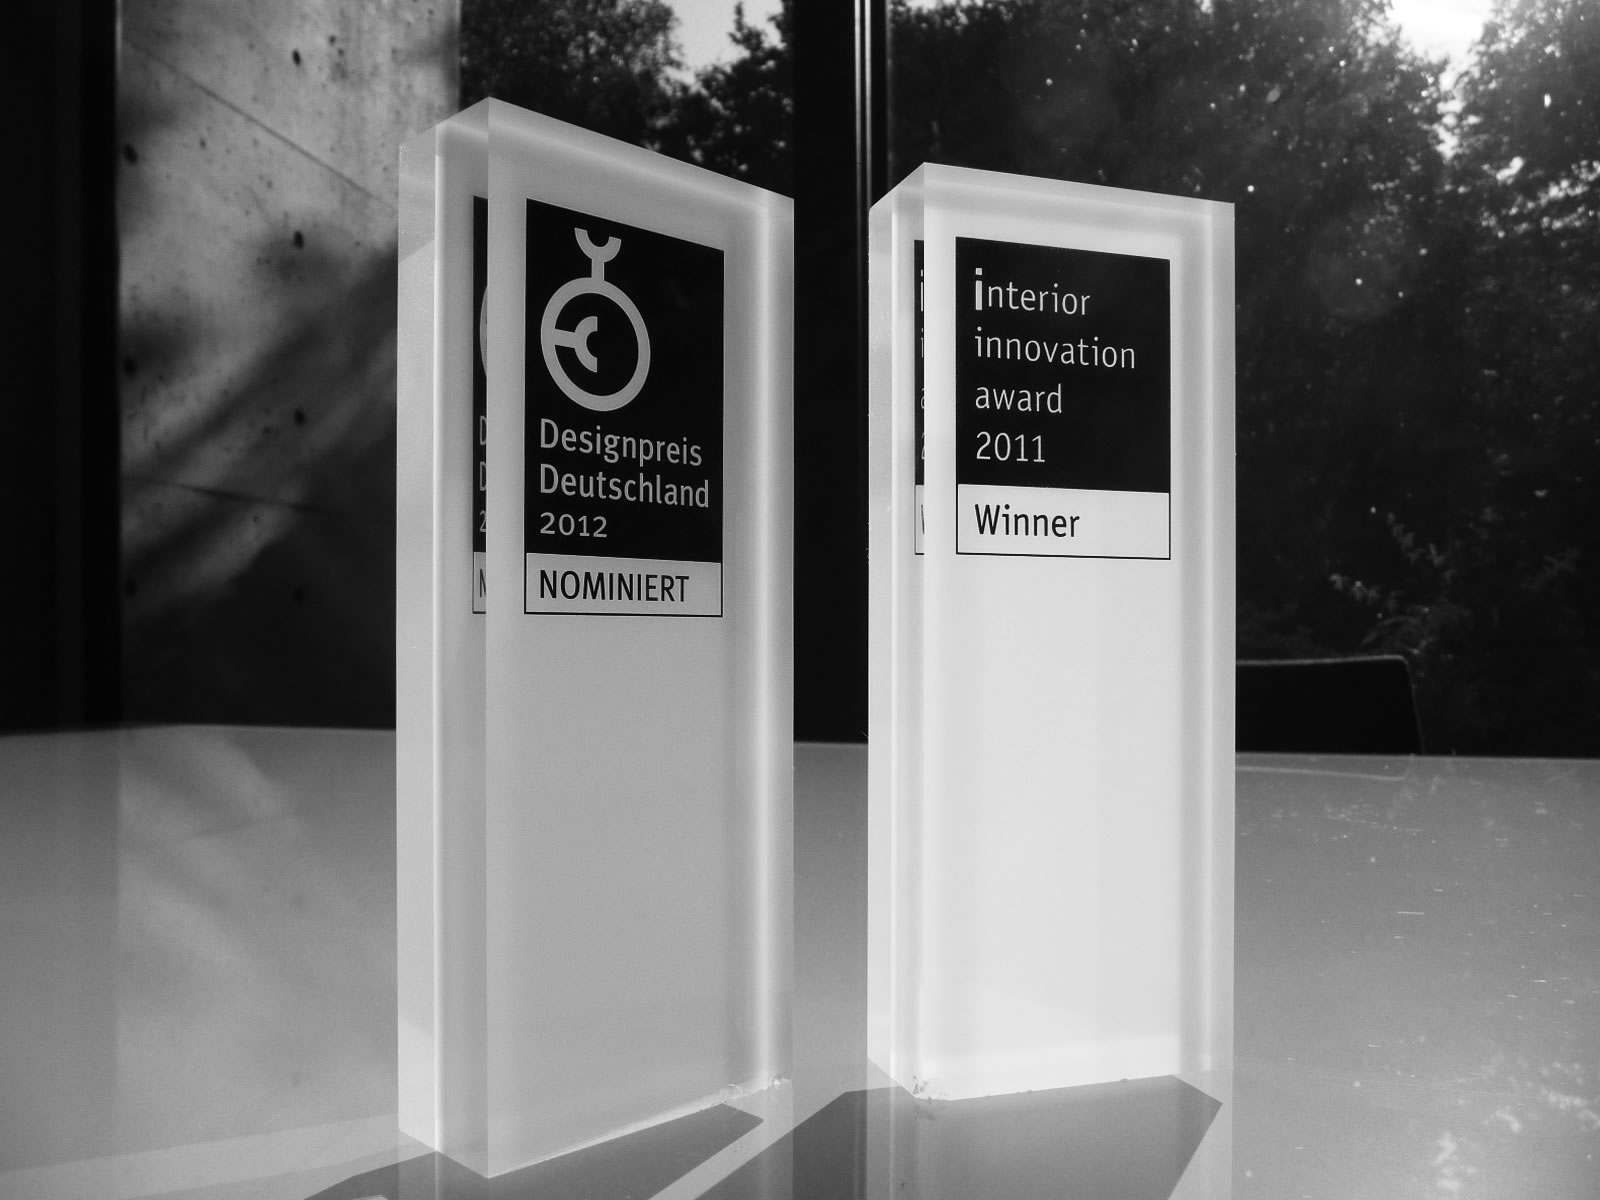 RECHTECK Award Winning Designer Interior Innovation Award 2011